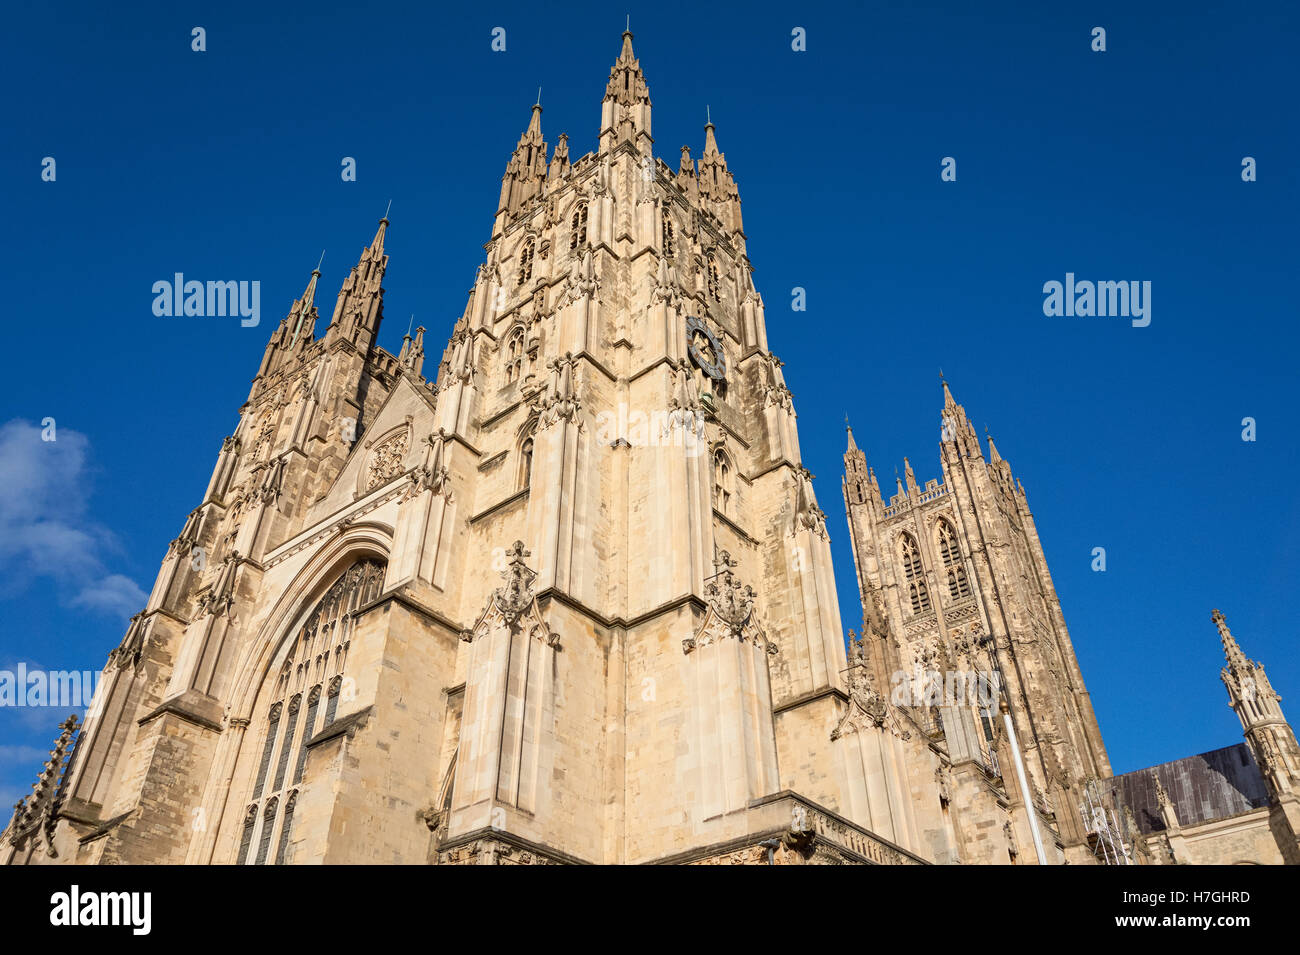 La Cathédrale de Canterbury à Canterbury, Angleterre Royaume-Uni UK Banque D'Images